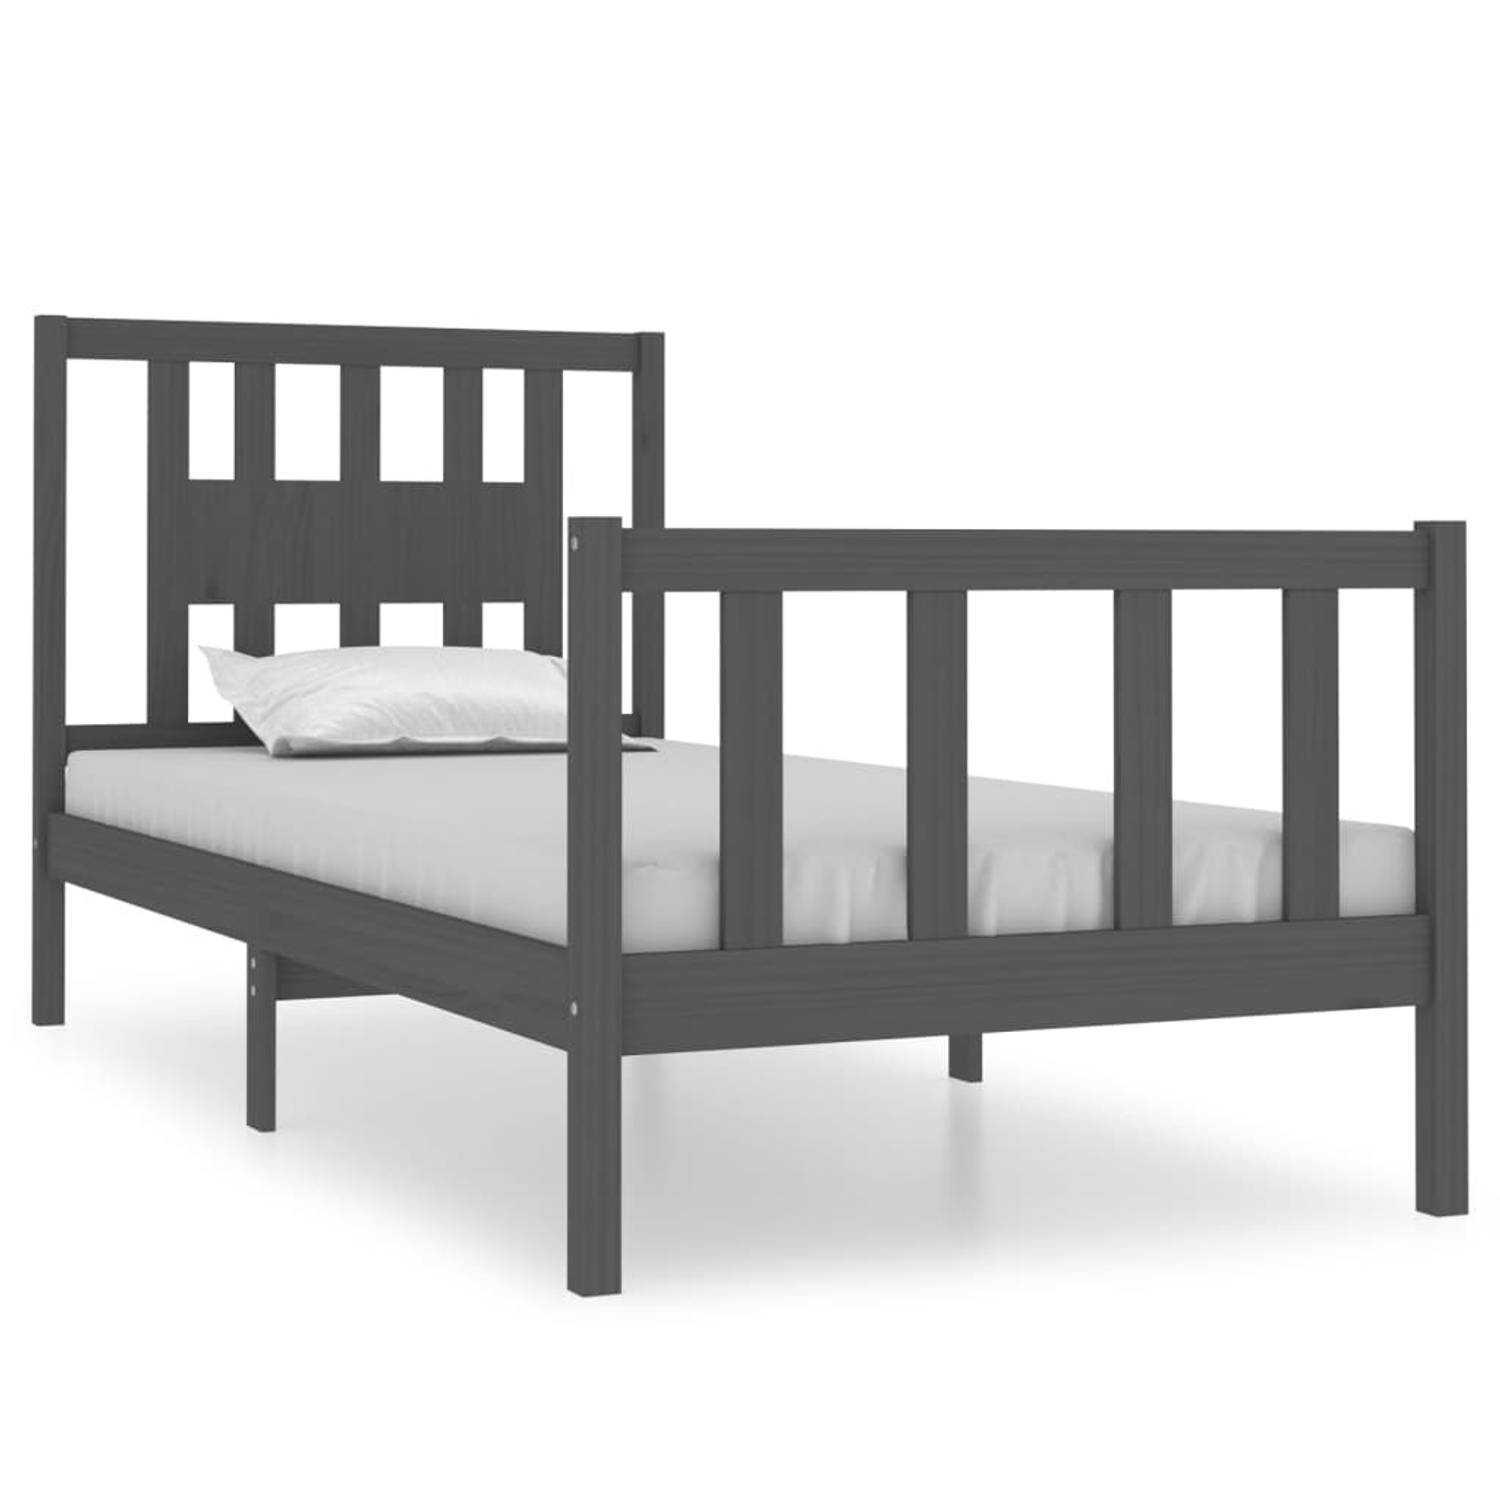 The Living Store Bedframe massief hout grijs 90x190 cm 3FT Single - Bedframe - Bedframes - Eenpersoonsbed - Bed - Bedombouw - Ledikant - Houten Bedframe - Eenpersoonsbedden - Bedde